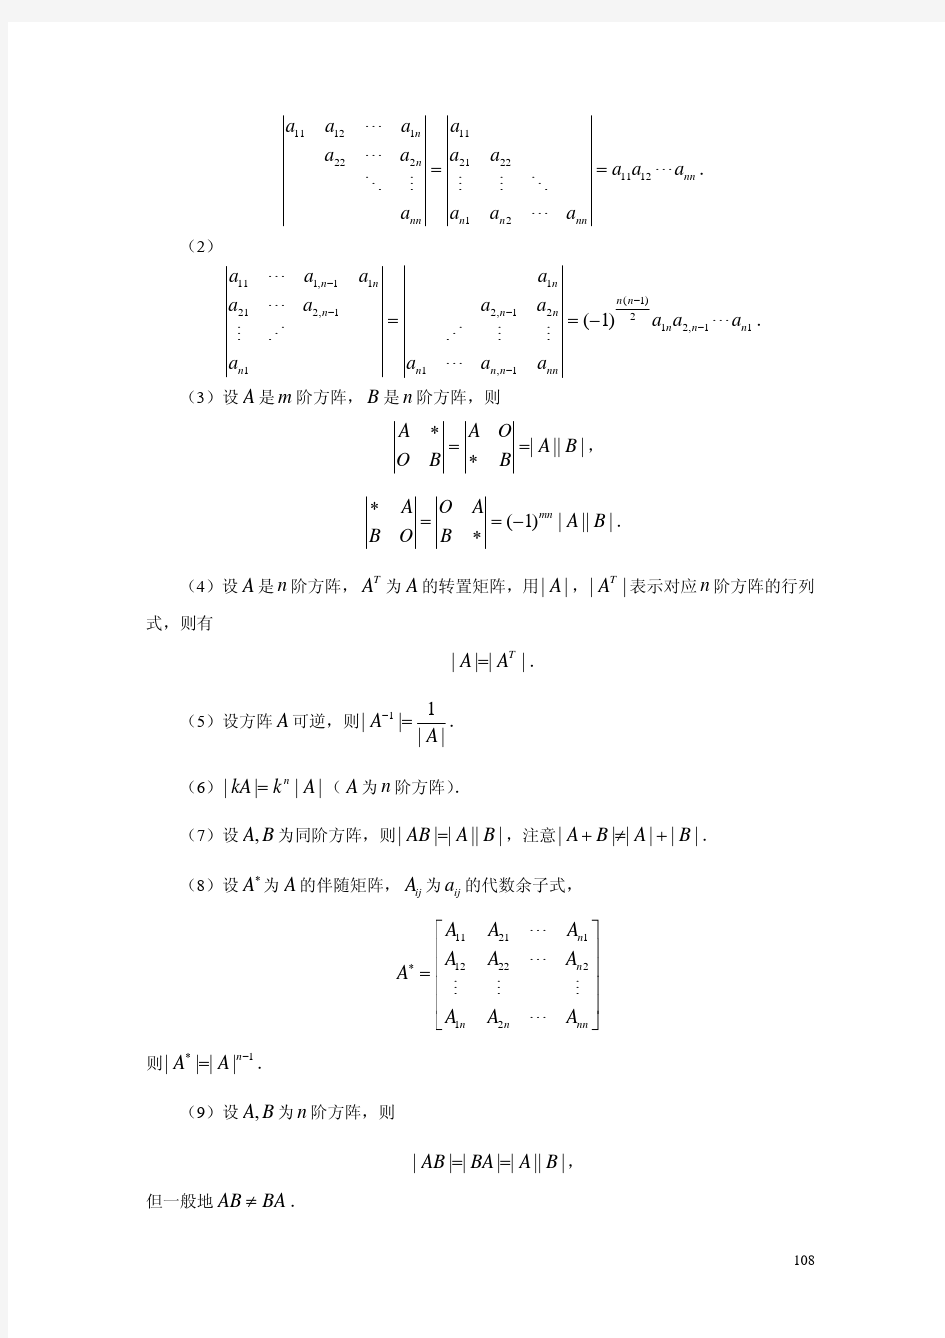 考研数学公式定理背诵手册(数学二)：线性代数